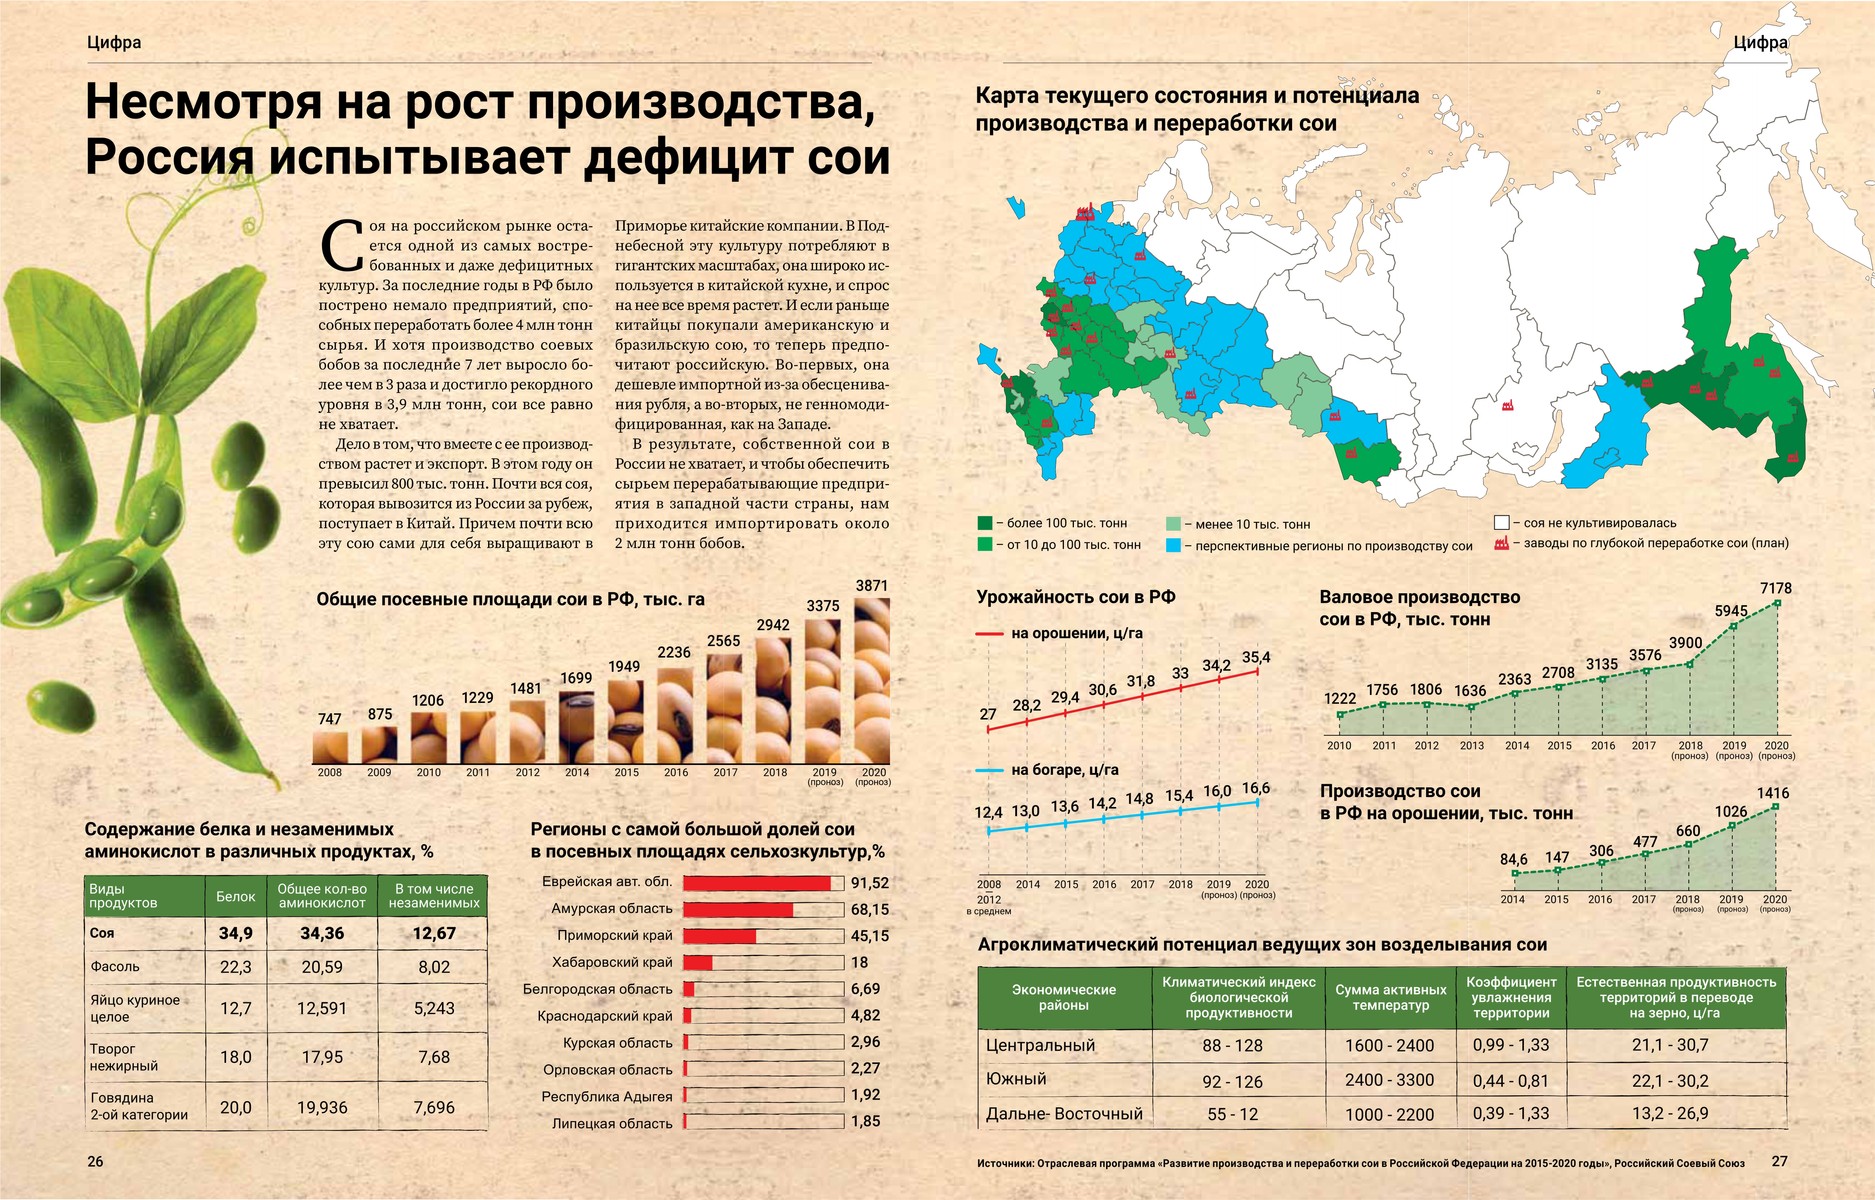 Несмотря на рост производства Россия испытывает дефицит сои